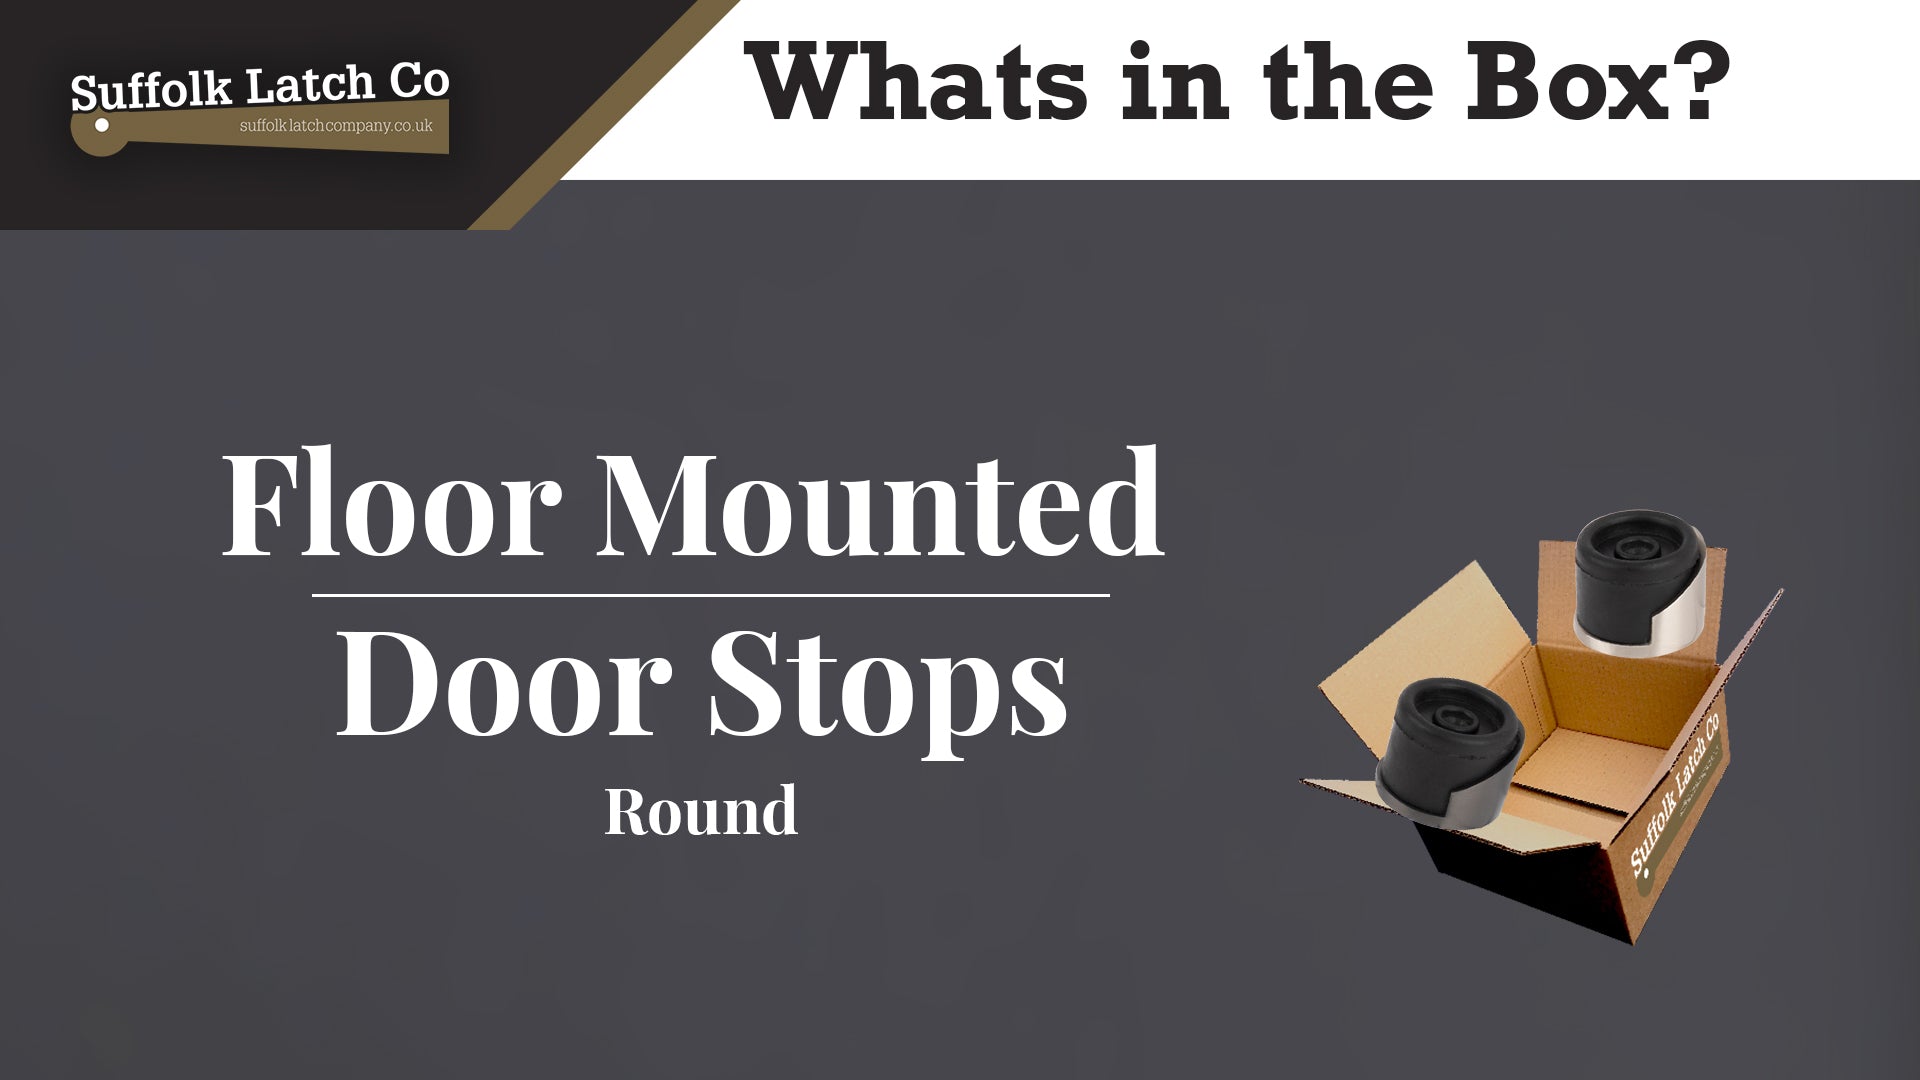 What's in the Box: Round Floor Mounted Door Stop